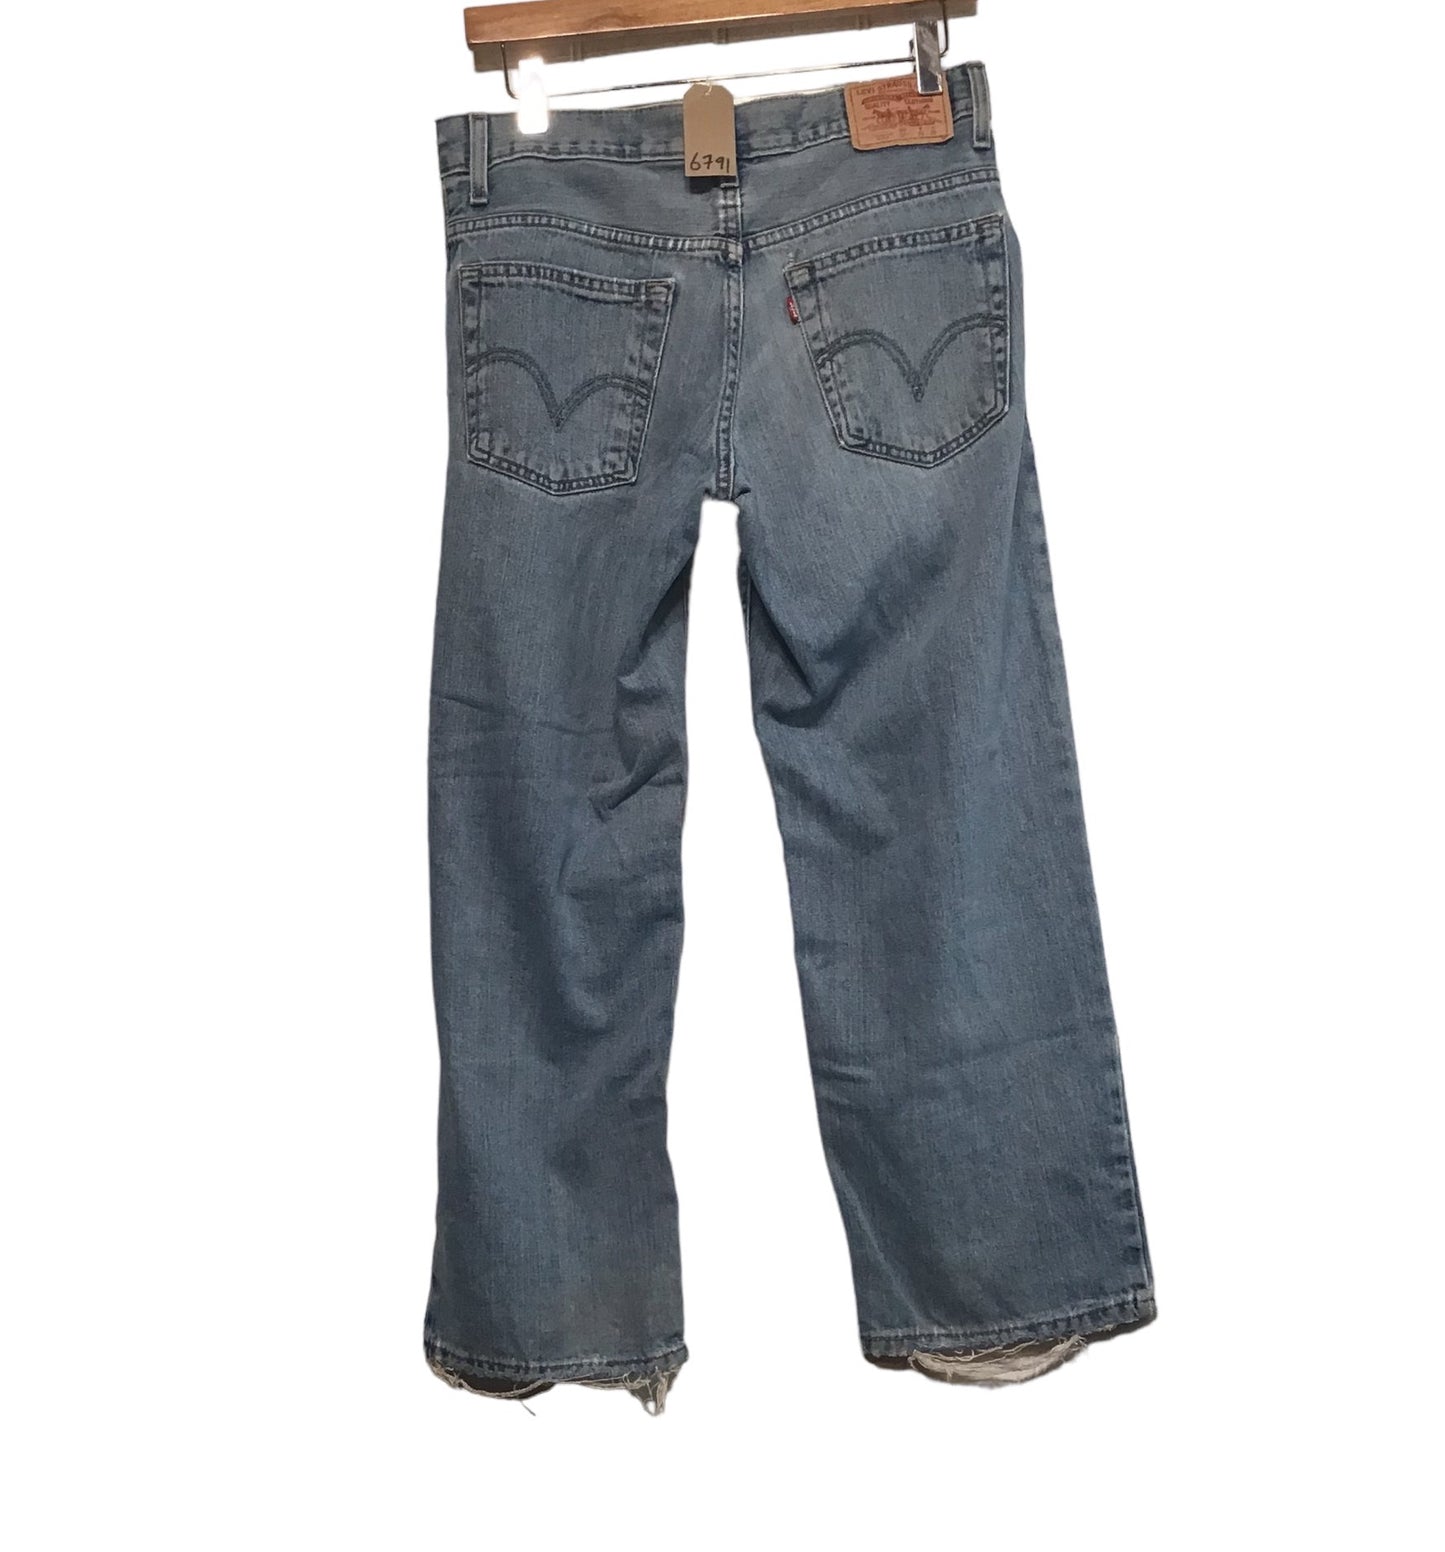 Levi 550 Jeans (30x26)